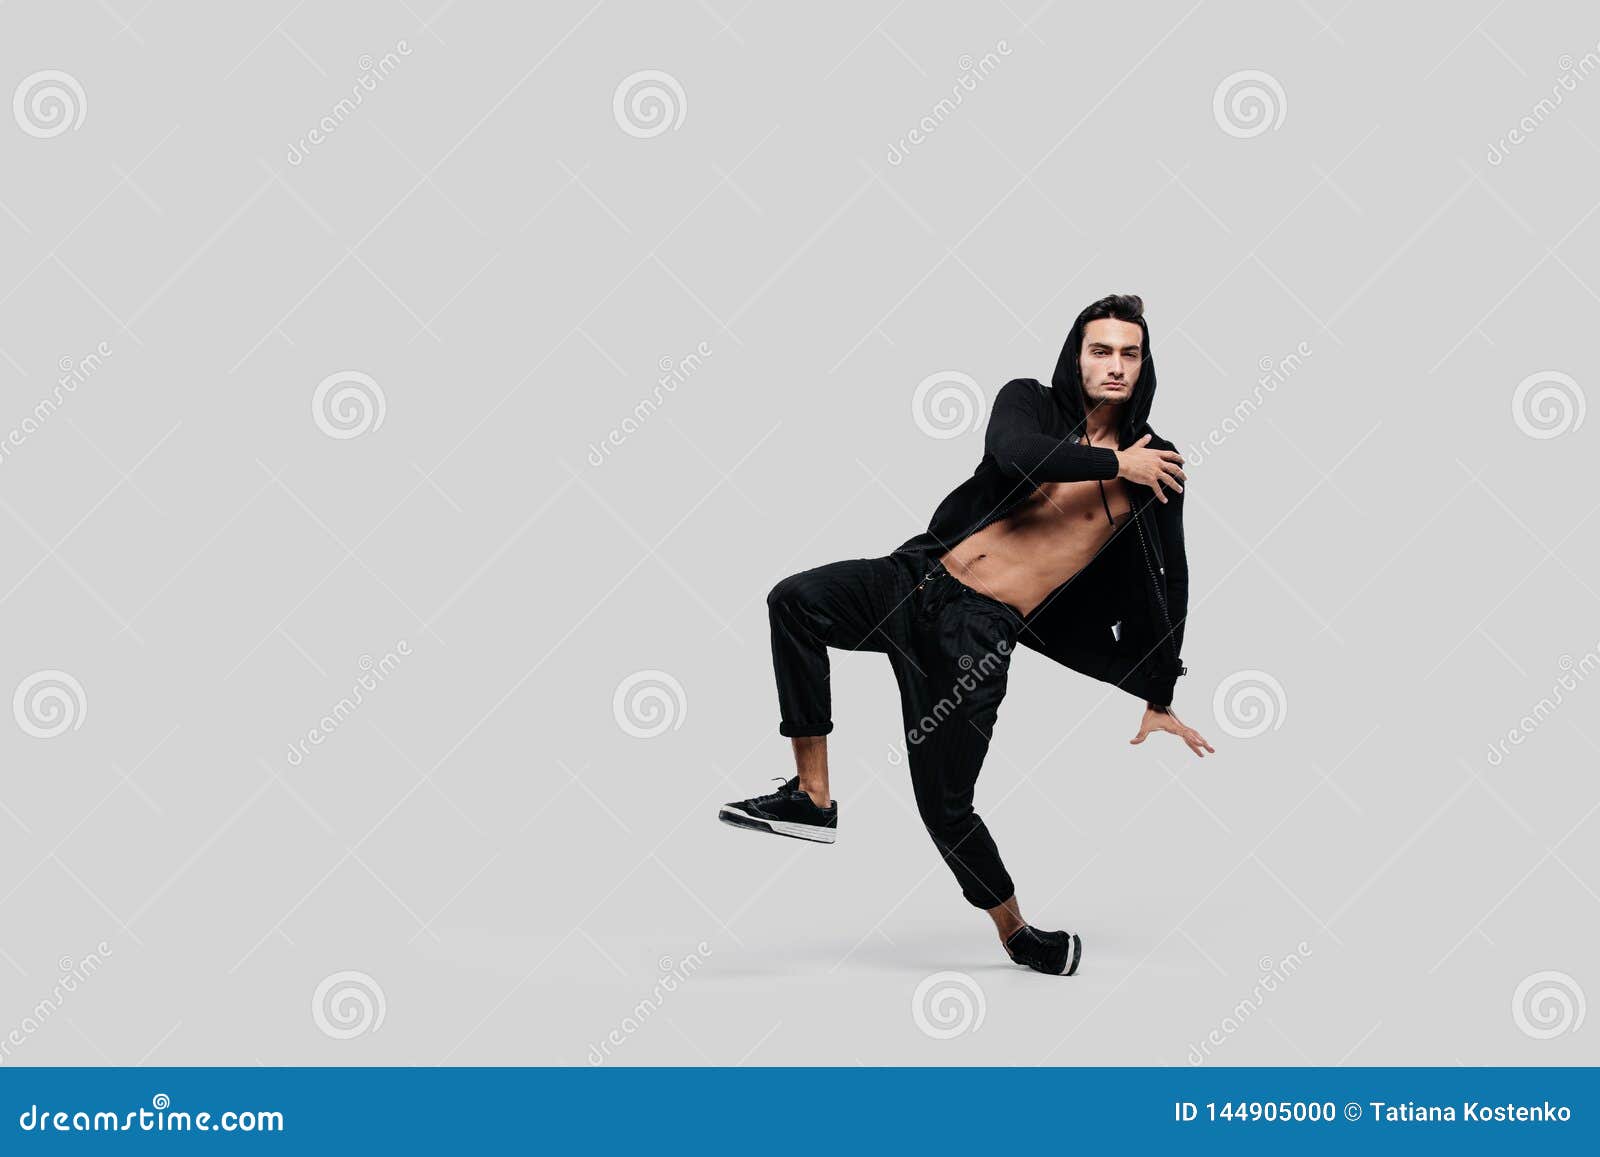 Ο όμορφος νέος χορευτής του χορού οδών που ντύνεται στα μαύρα εσώρουχα, μια  μπλούζα σε έναν γυμνό κορμό και μια κουκούλα χορεύει Στοκ Εικόνες - εικόνα  από lifestyle: 144905000